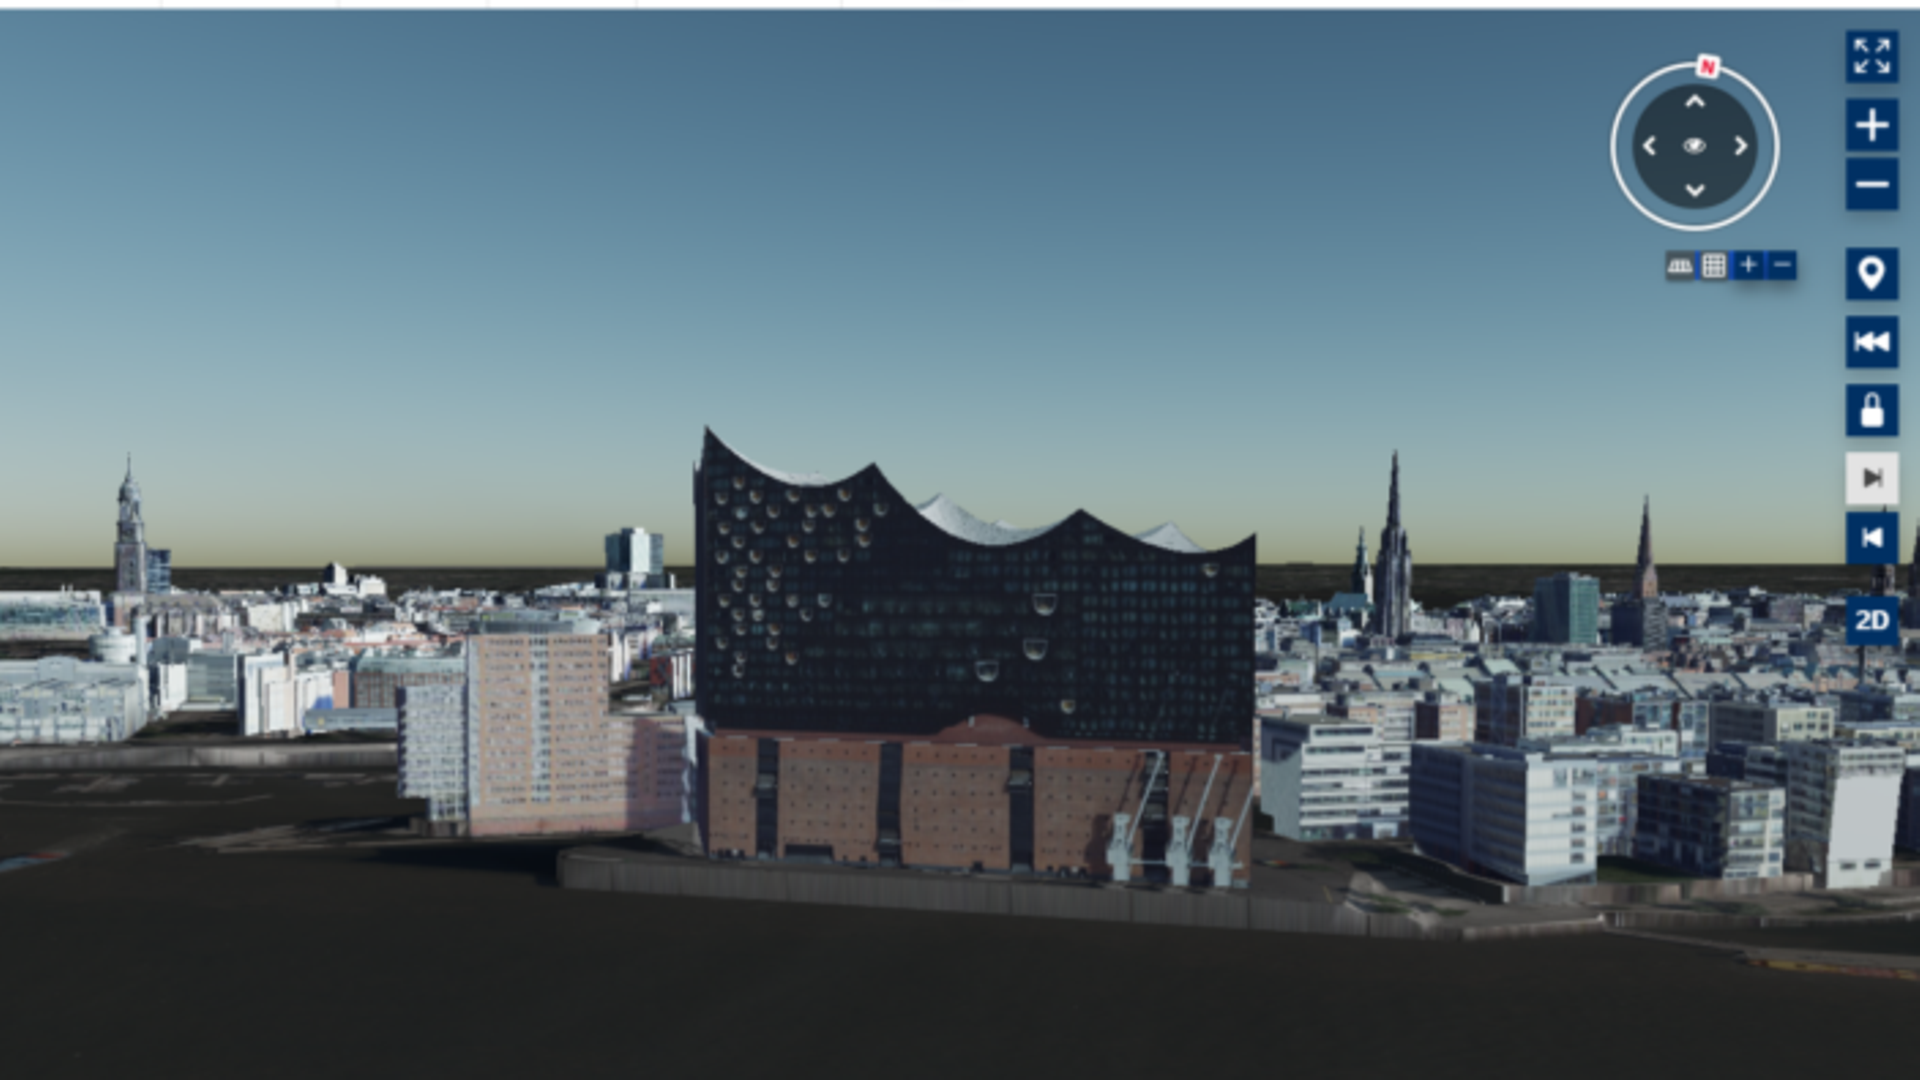 3D Modell der Elbe mit Blick auf die Elbphilharmonie